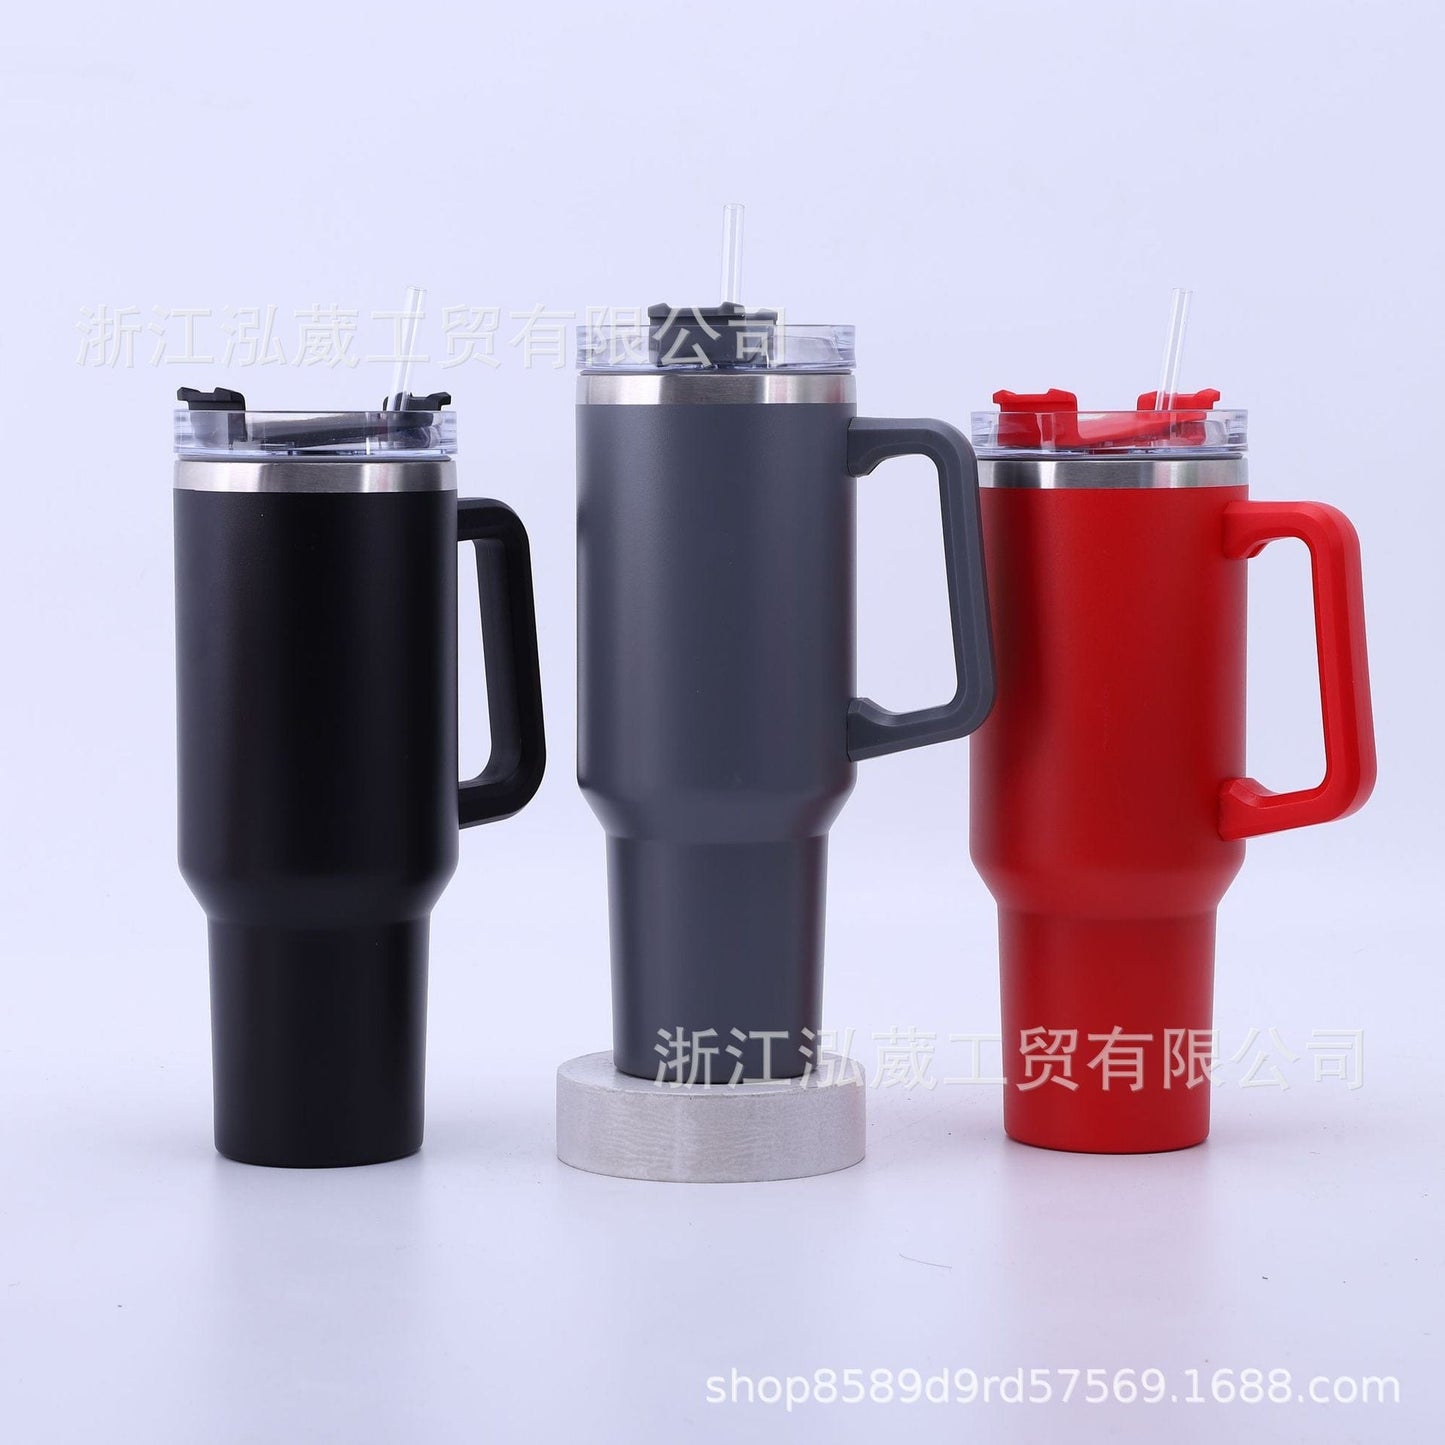 Cross-border new 304 stainless steel double-layer thermos mug 40oz handle mug car mug ice bully beer mug wholesale